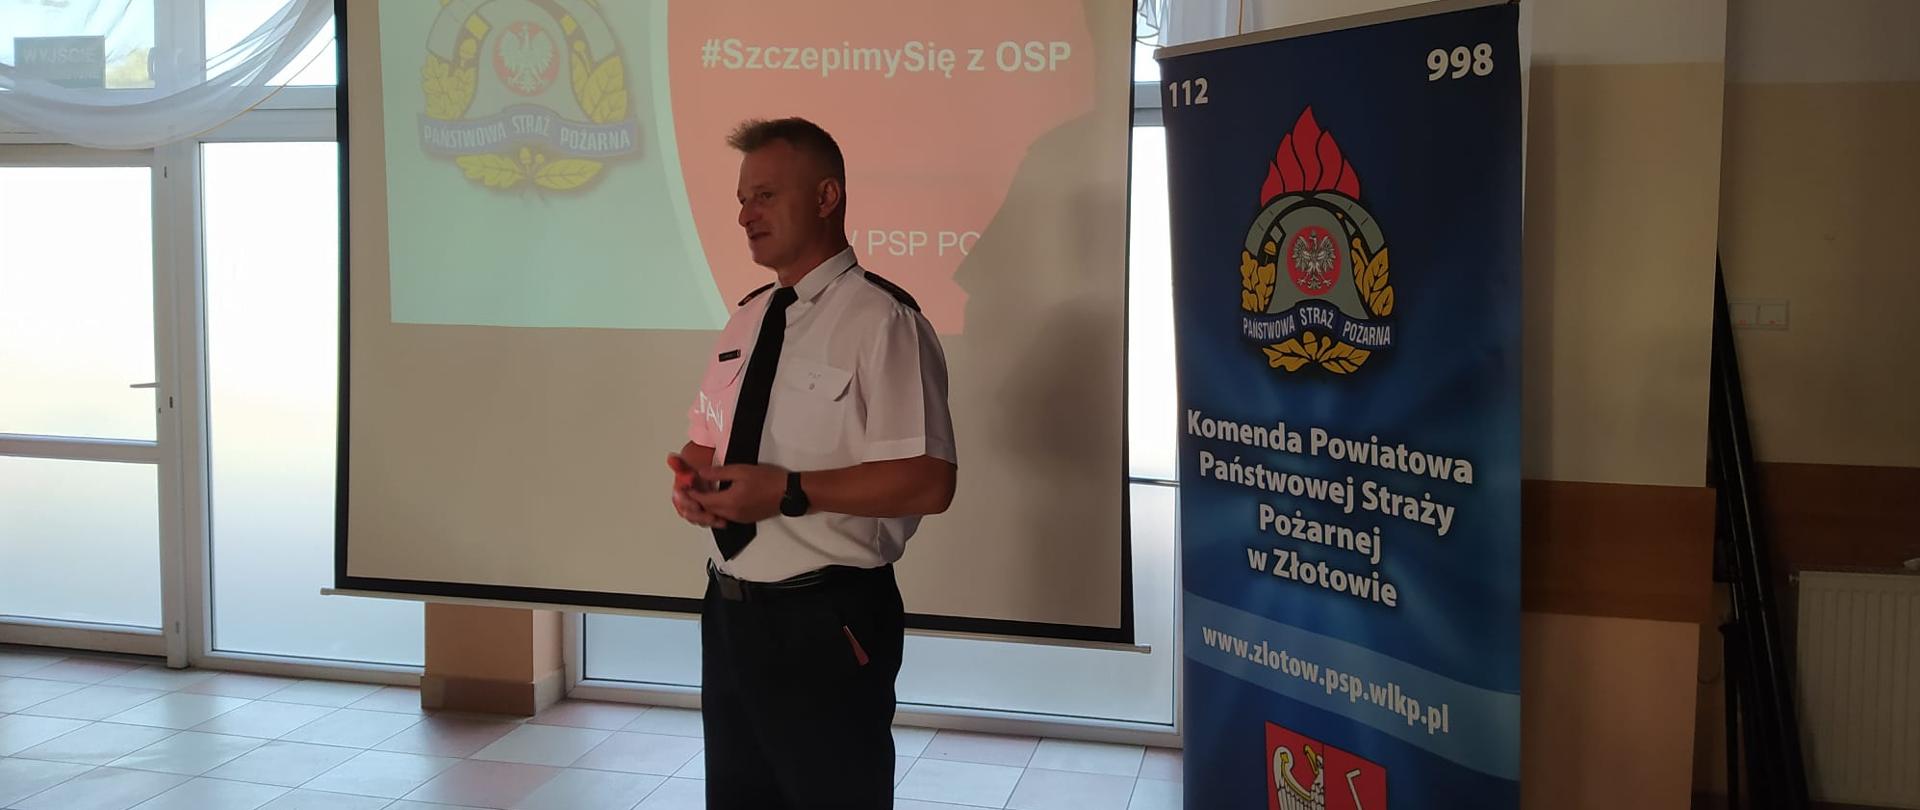 Na zdjęciu zastępca Komendanta Powiatowego st.bryg.Leszek Wójcik,który przedstawia druhom program Szczepimy się z OSP.